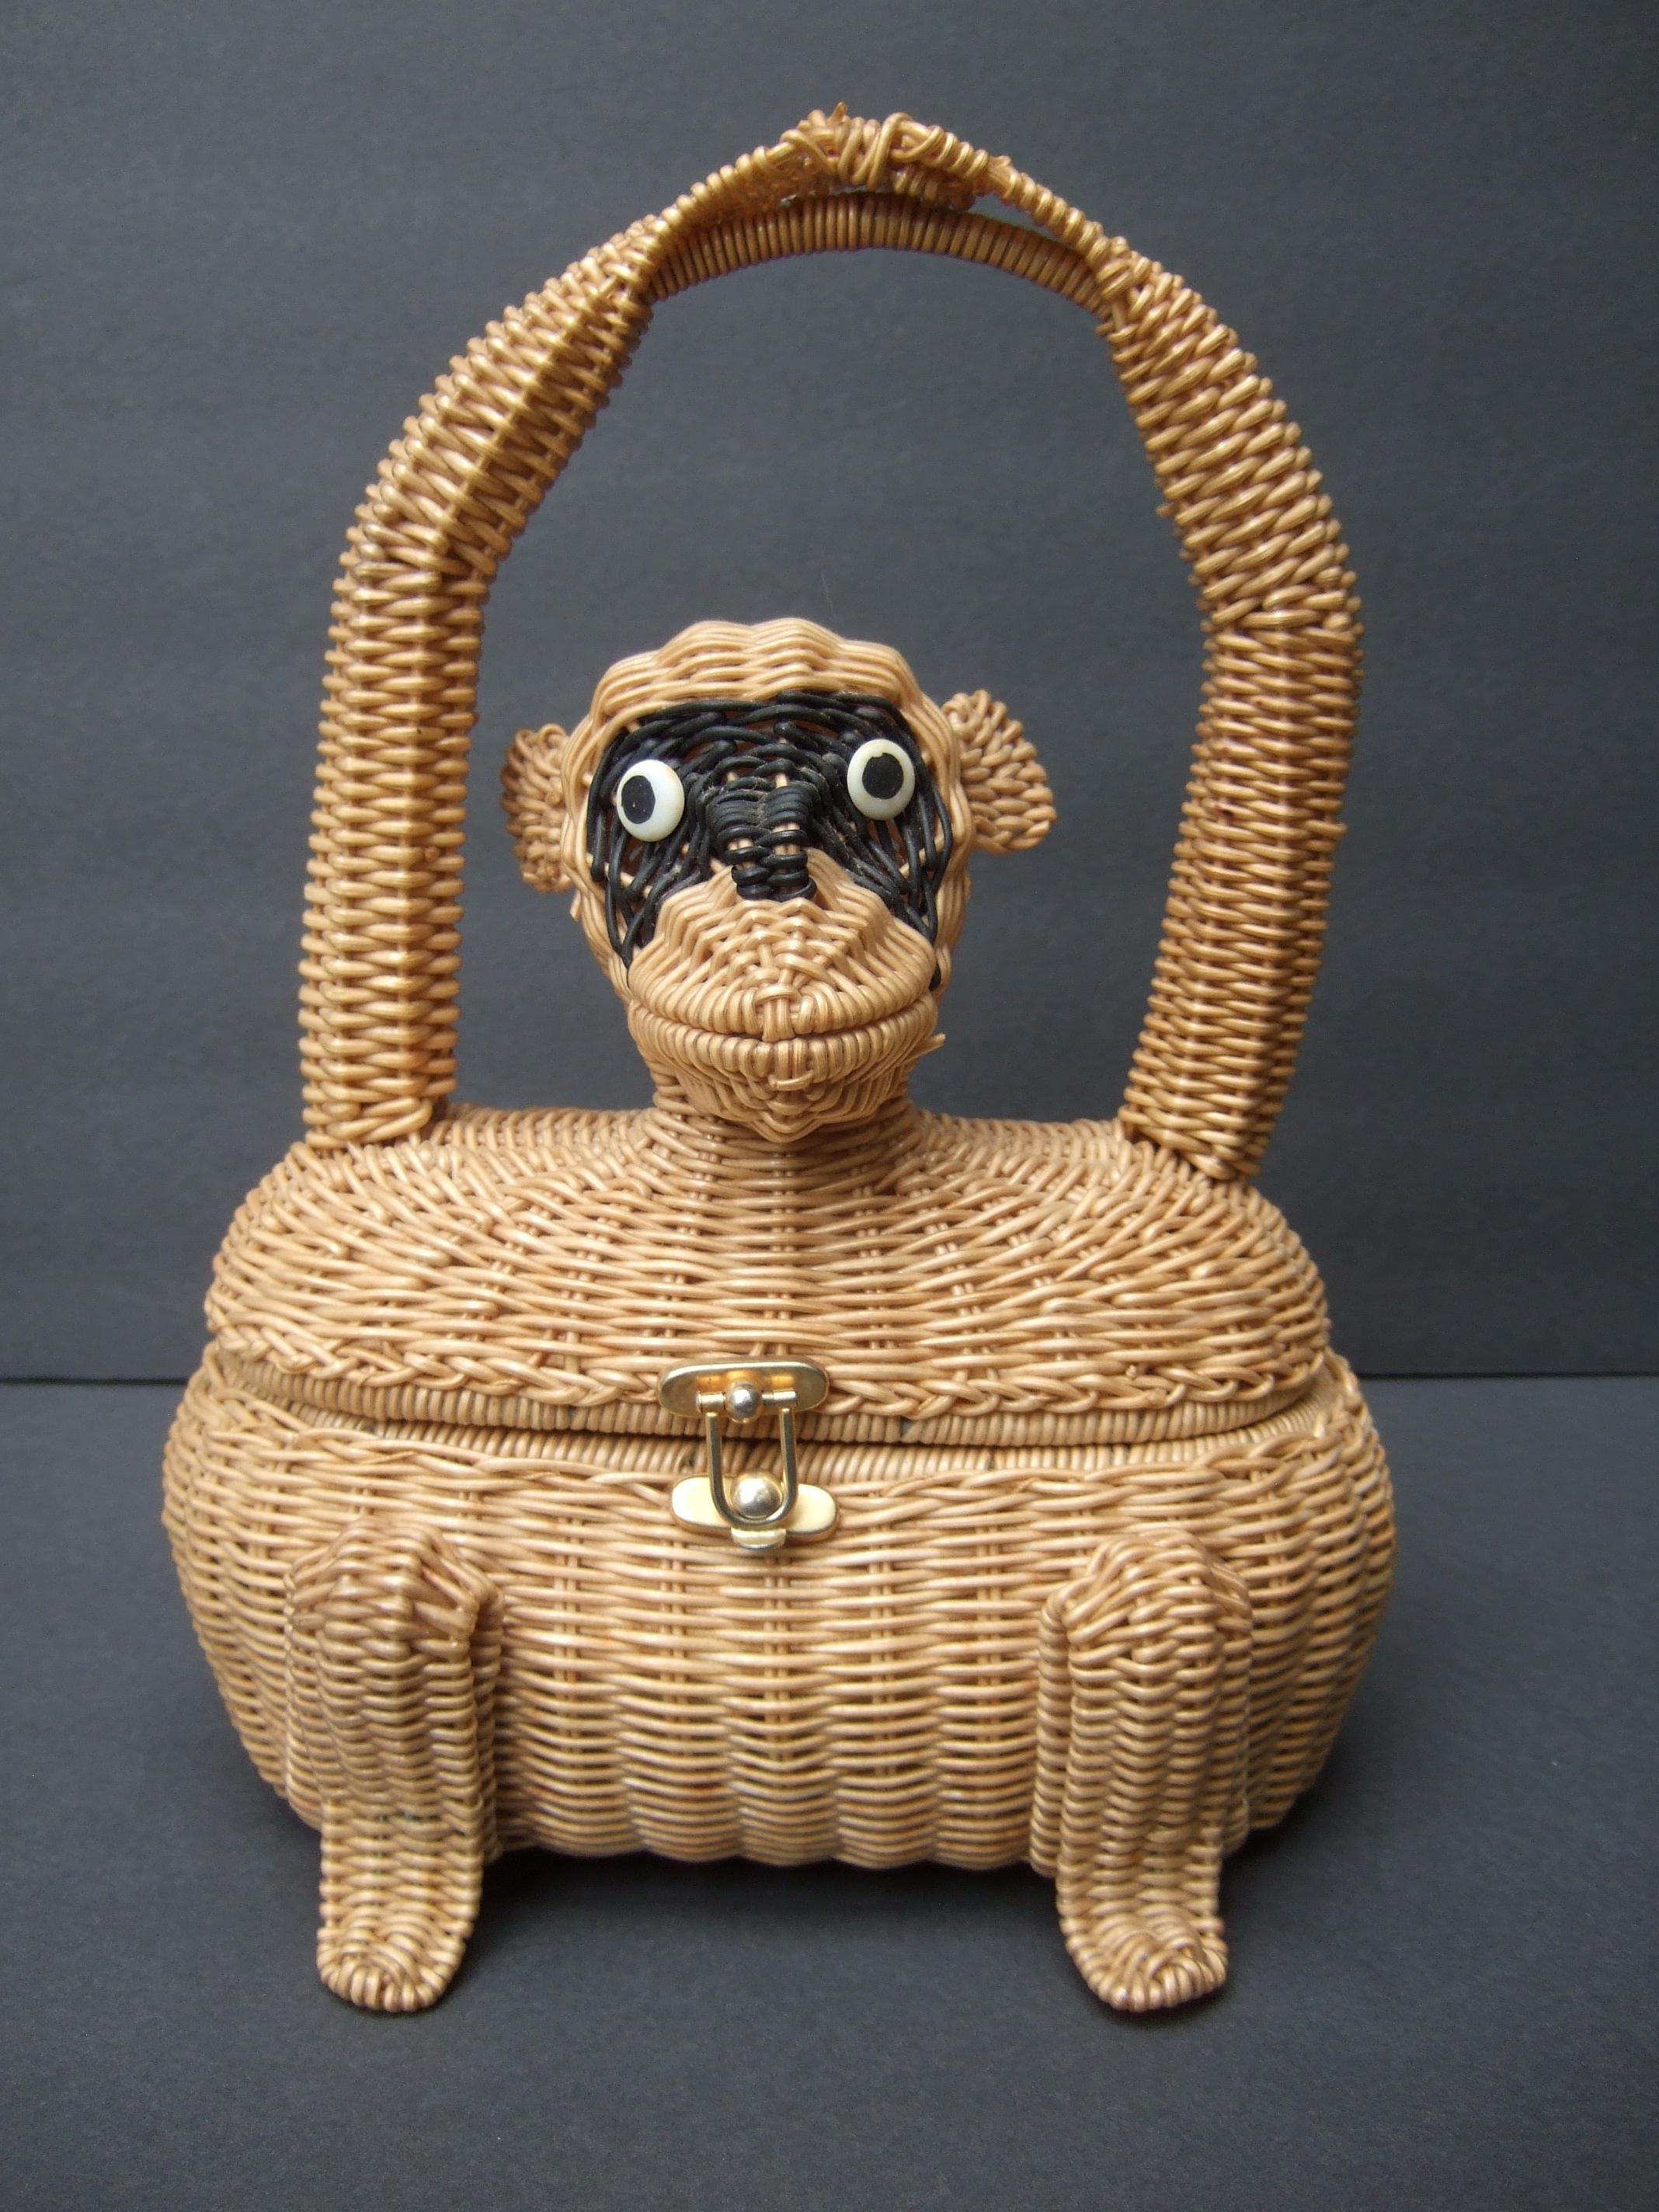 Äußerst seltene skurrile dreidimensionale Affenhandtasche aus Weide um 1960
Die charmante Handtasche aus Weidengeflecht aus der Jahrhundertmitte ist mit einer liebenswerten Affenfigur gestaltet
Mit passendem Weidengriff, der die Arme des Affen